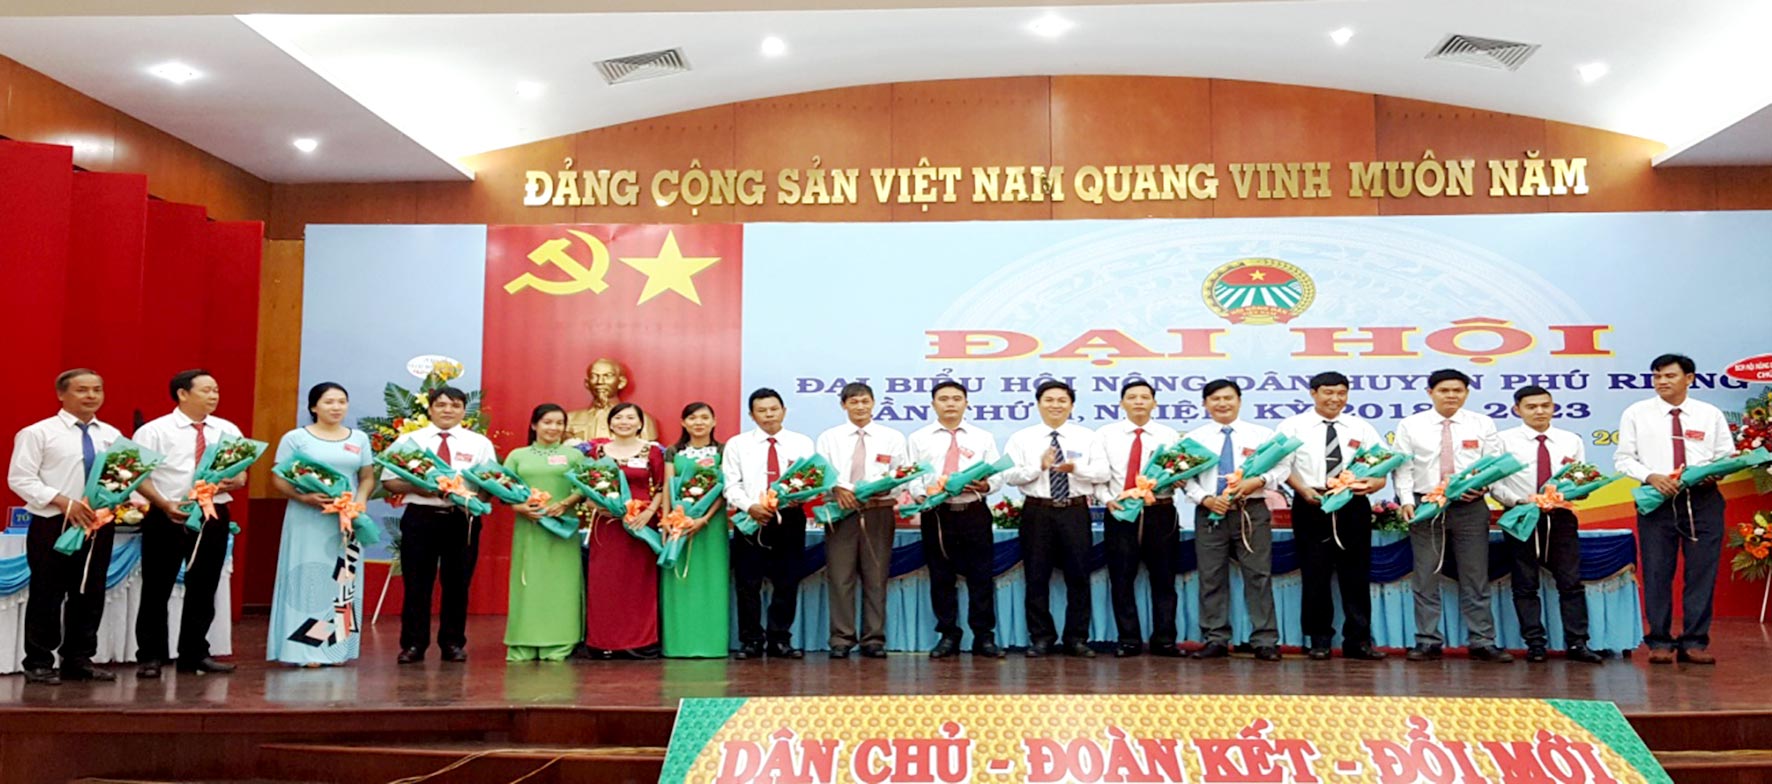 Ban chấp hành Hội Nông dân huyện Phú Riềng nhiệm kỳ2018-2023 ra mắt đại hội